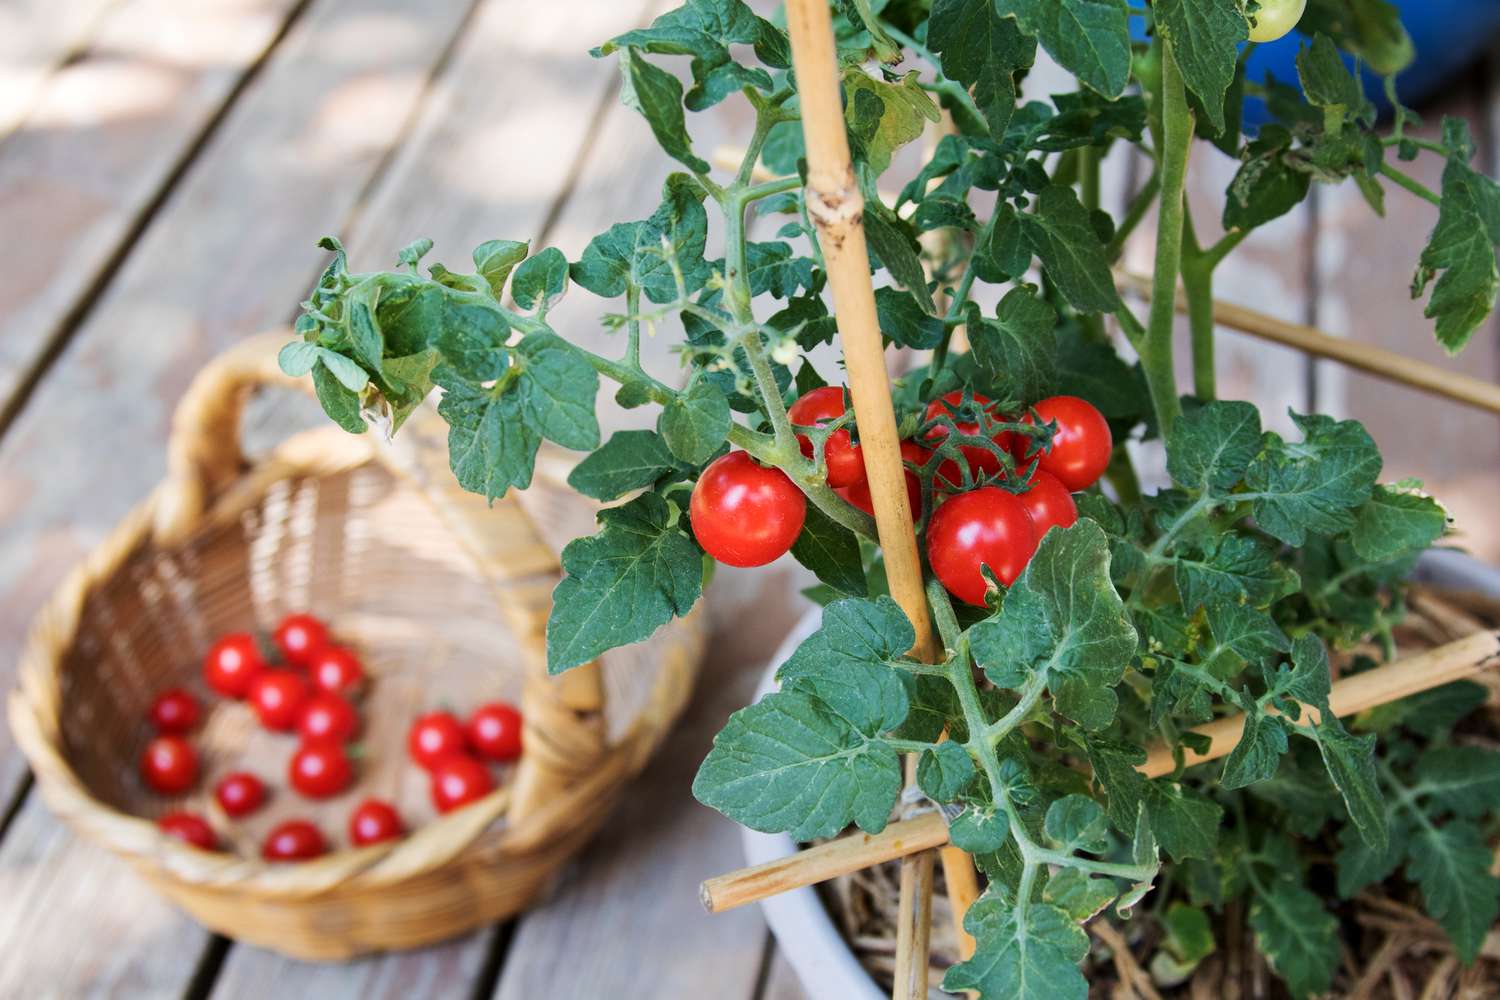 Leuchtend rote Tomaten hängen am Pflanzenstamm neben einem Weidenkorb mit geernteten Tomaten